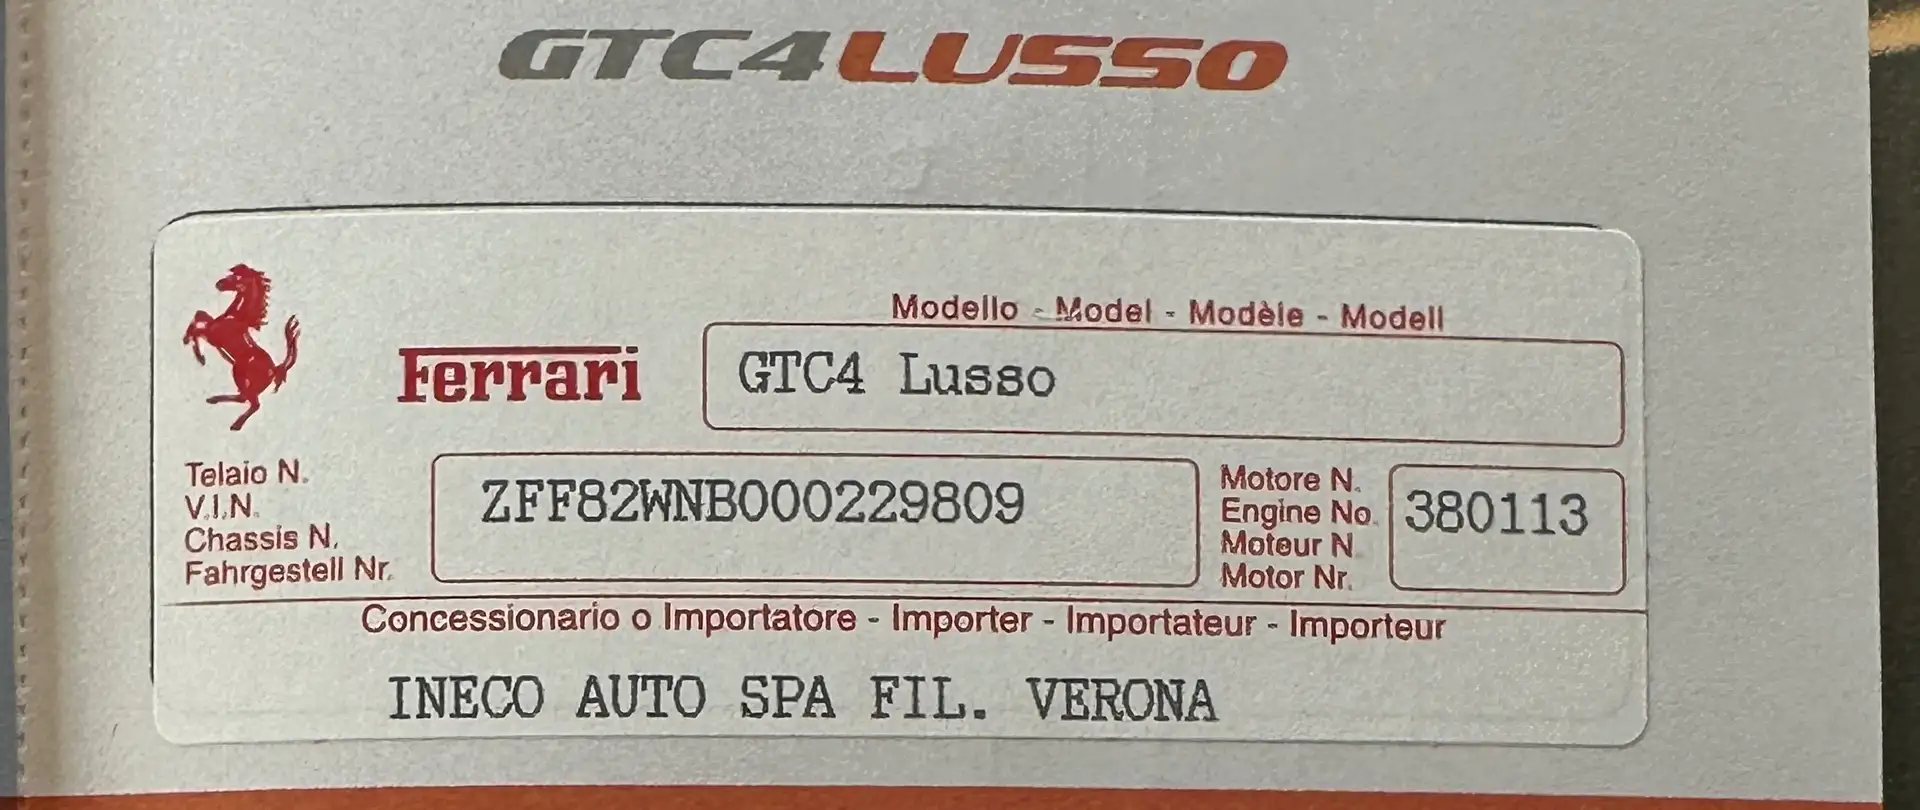 Ferrari GTC4 Lusso V12 - LEGGERE DESCRIZIONE - CERTIFICATA 100% Gri - 1